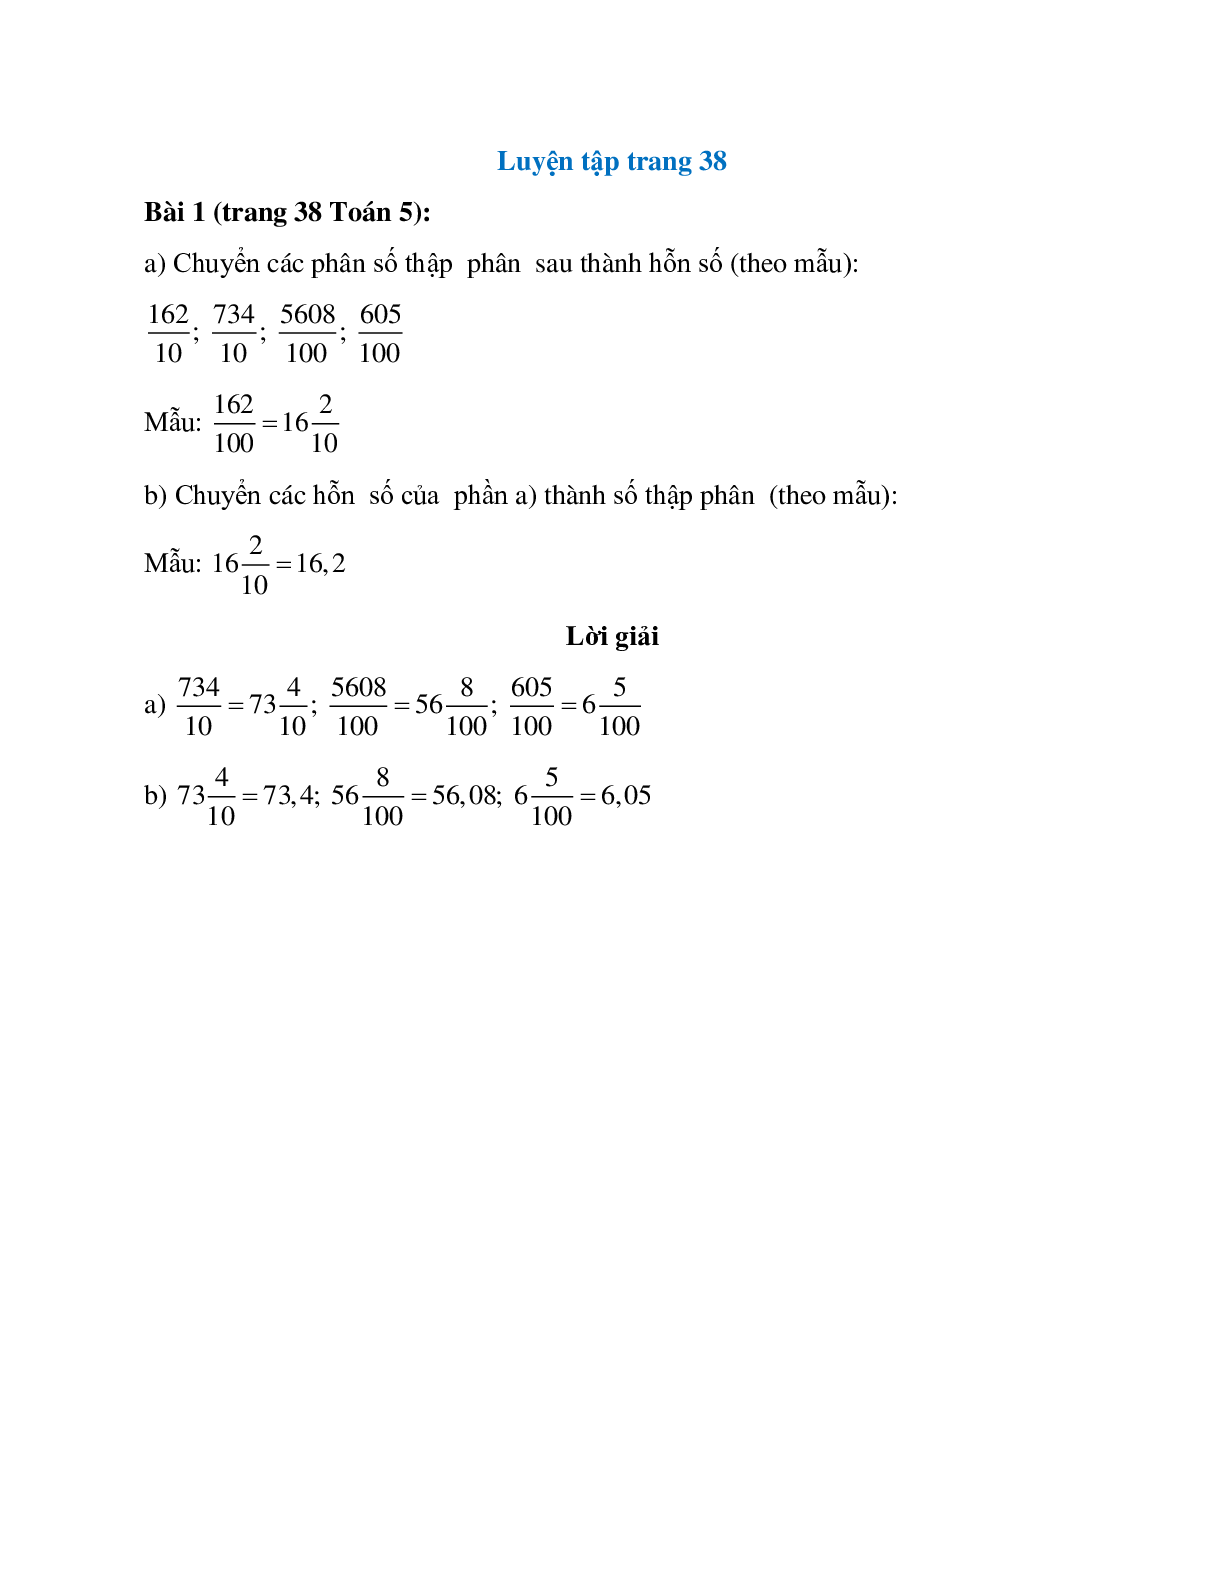 Chuyển các phân số thập  phân  sau thành hỗn số (theo mẫu): 162/10 (trang 1)